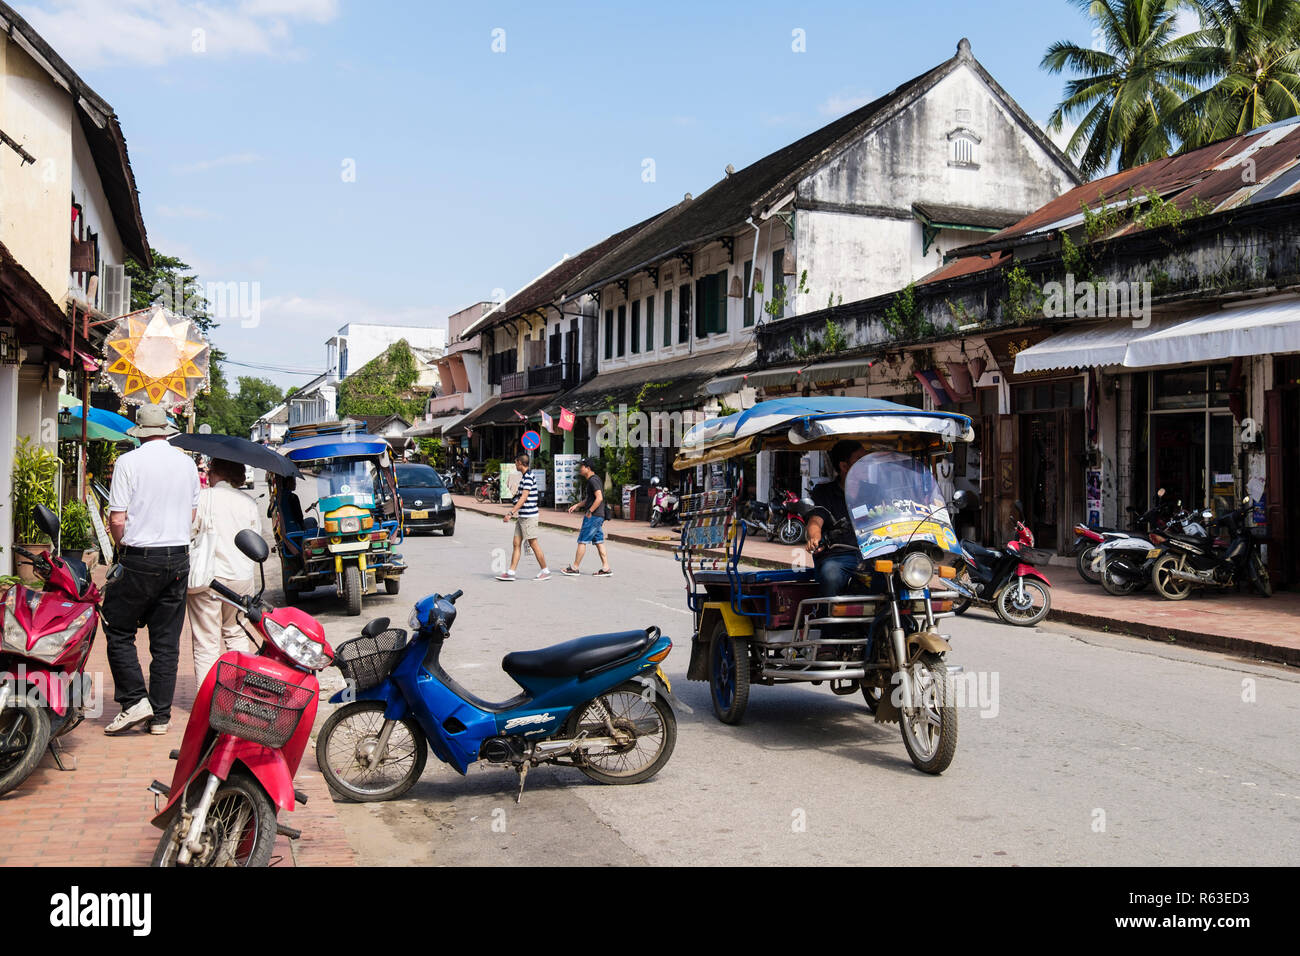 Calle típica escena con Tuk Tuks y tiendas en el barrio colonial de la ciudad vieja. Sisavangvong Road, Luang Prabang, provincia Louangphabang, Laos, Asia Foto de stock